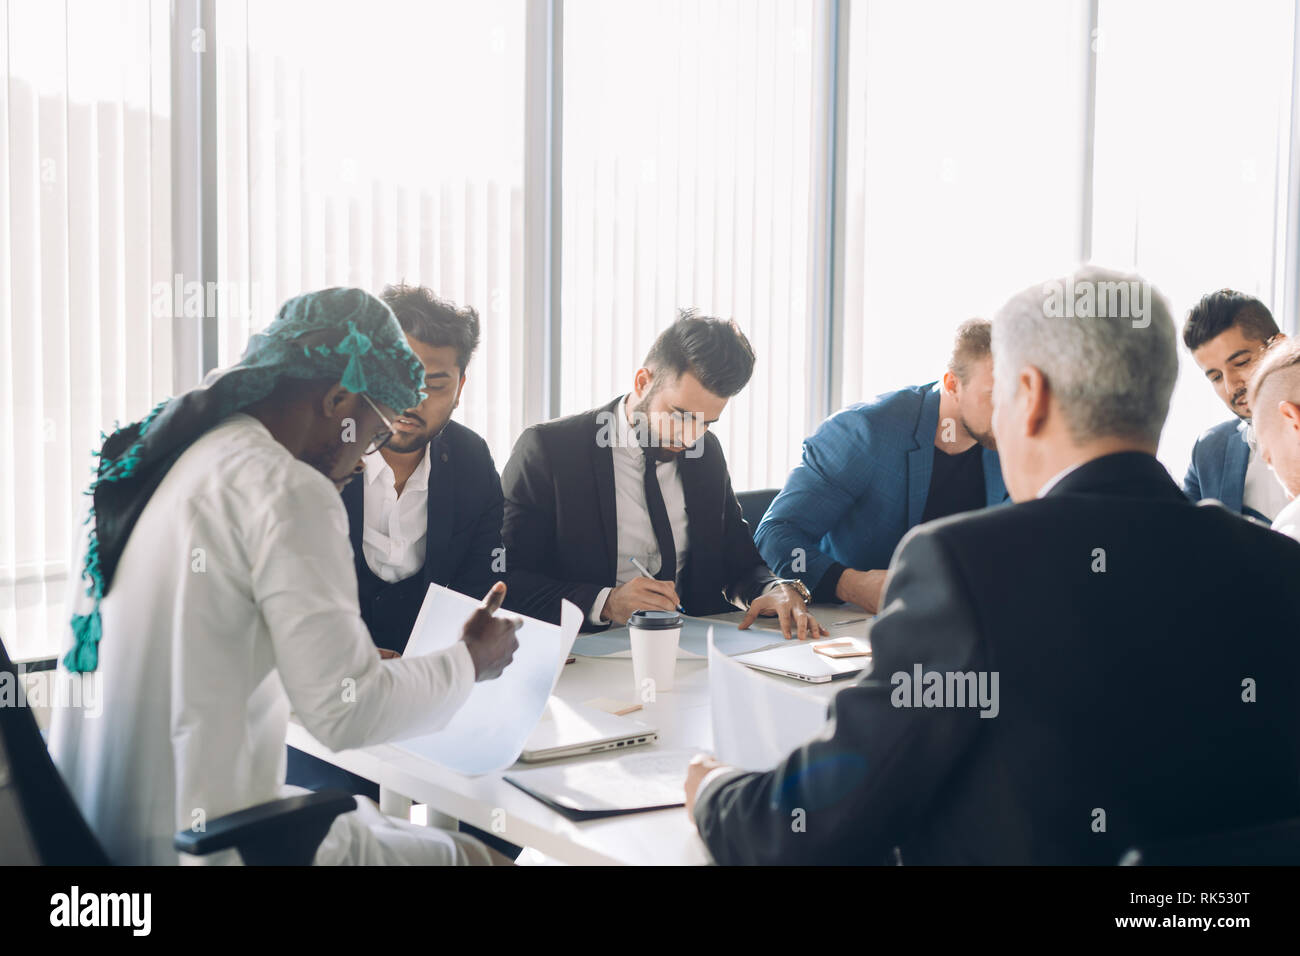 Investisseur arabe en blanc et gutra candura nationale sur la stratégie financière de l'entreprise tête de discuter avec son multirucial sexe masculin au cours d'une réunion Banque D'Images